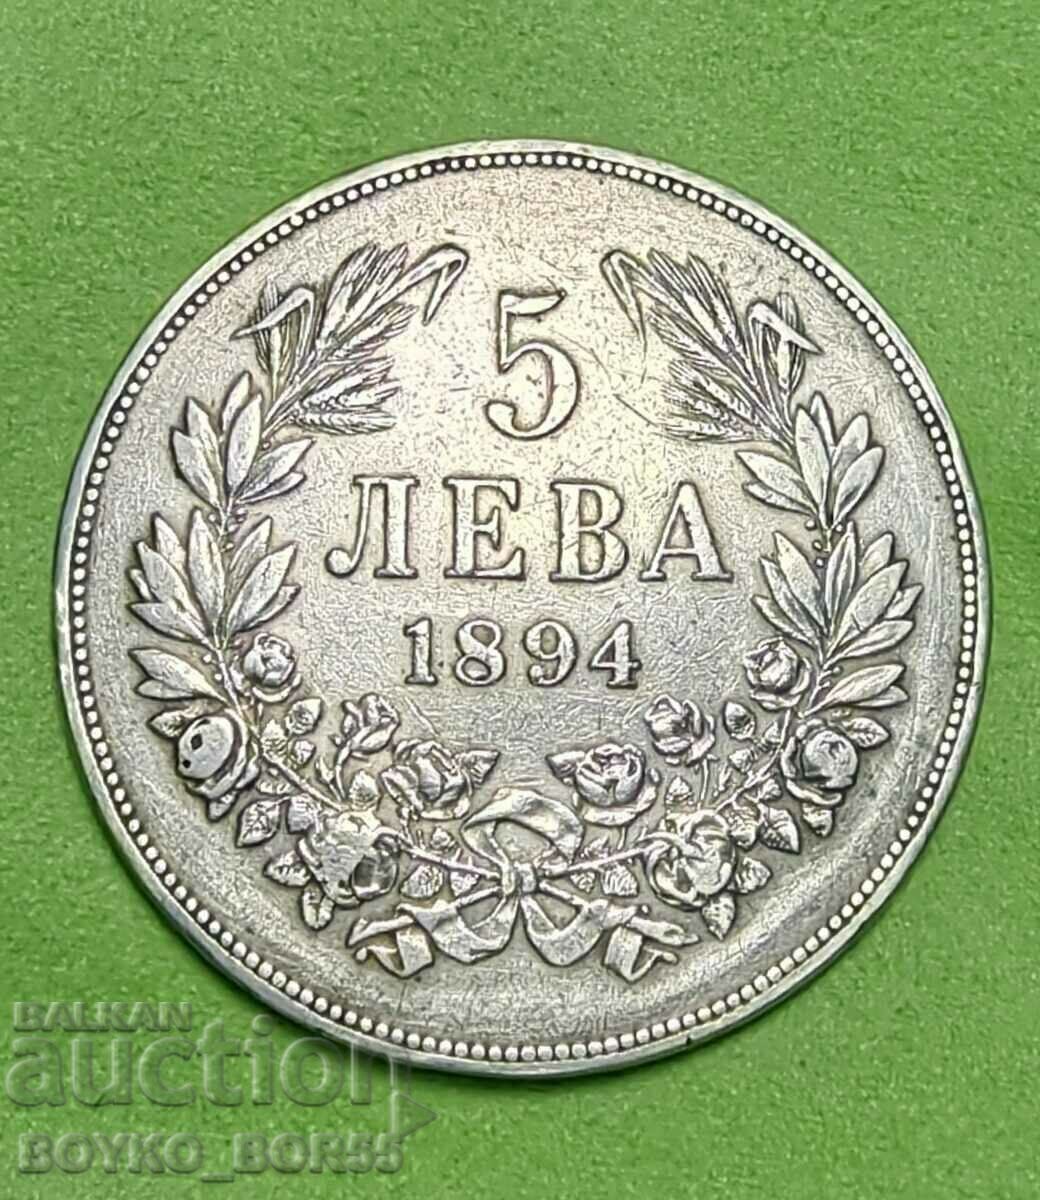 Κορυφαία ποιότητα! Βουλγαρικό Βασιλικό Ασημένιο Κέρμα 5 BGN 1894